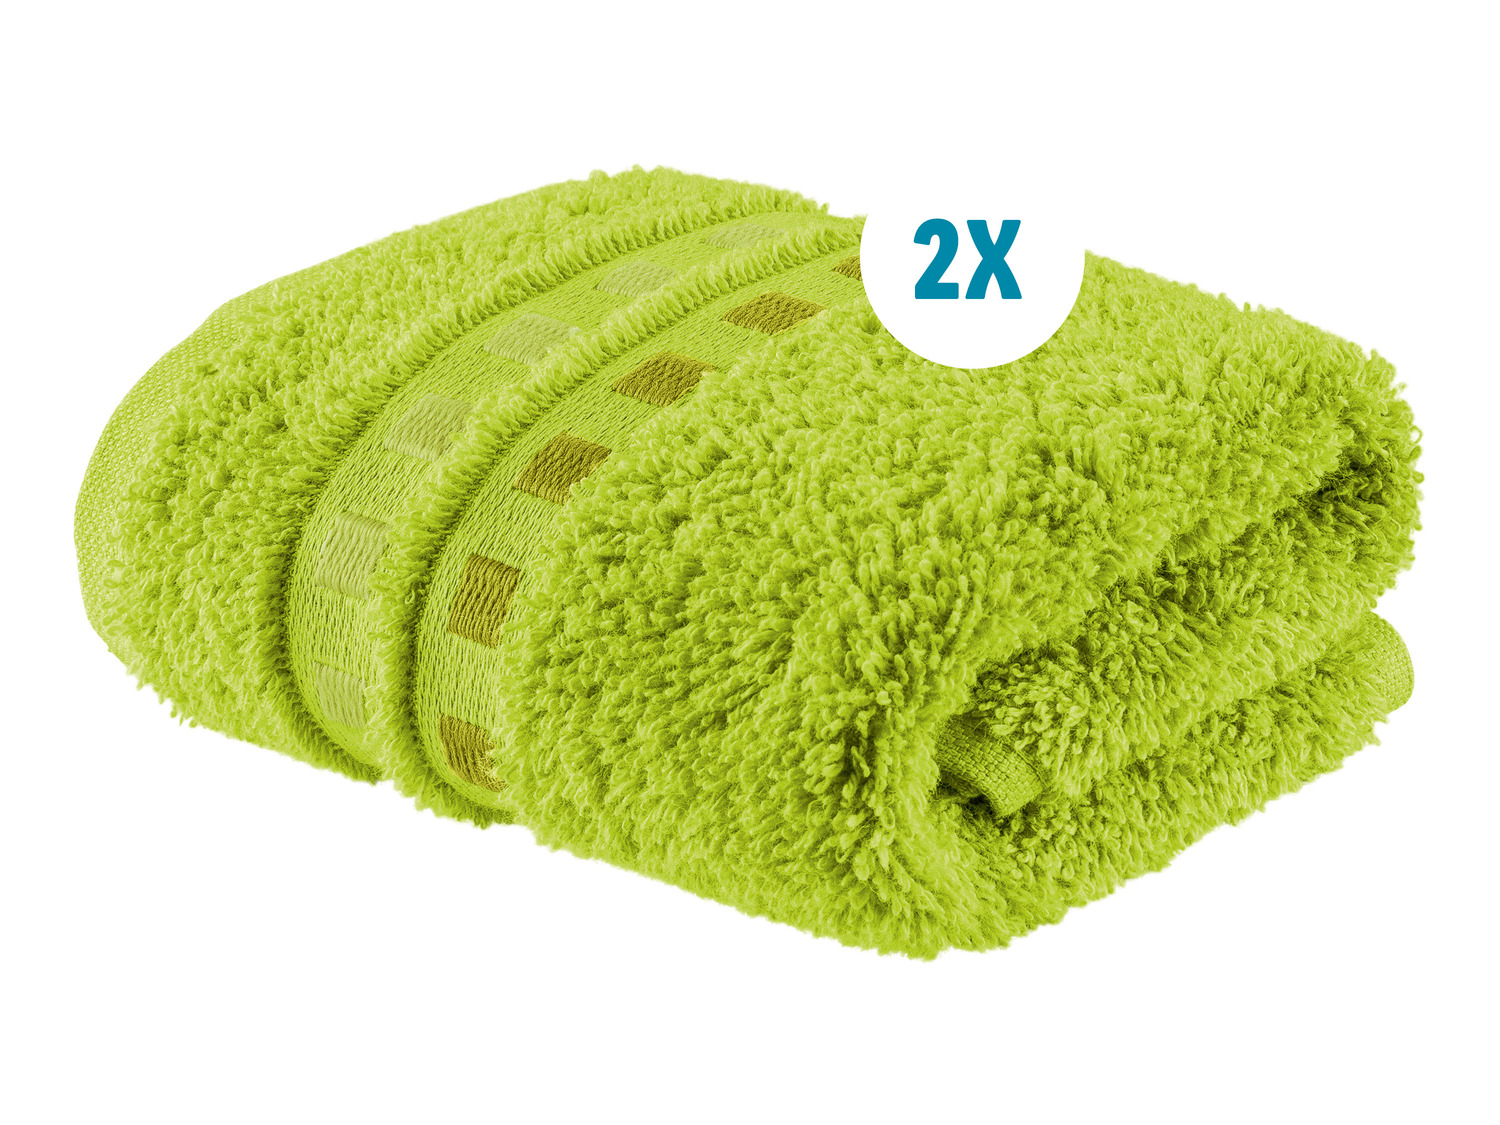 Ręczniki 30 x 50 cm, 2 szt.* , cena 6,99 PLN 
* Artykuł dostępny wyłącznie ...